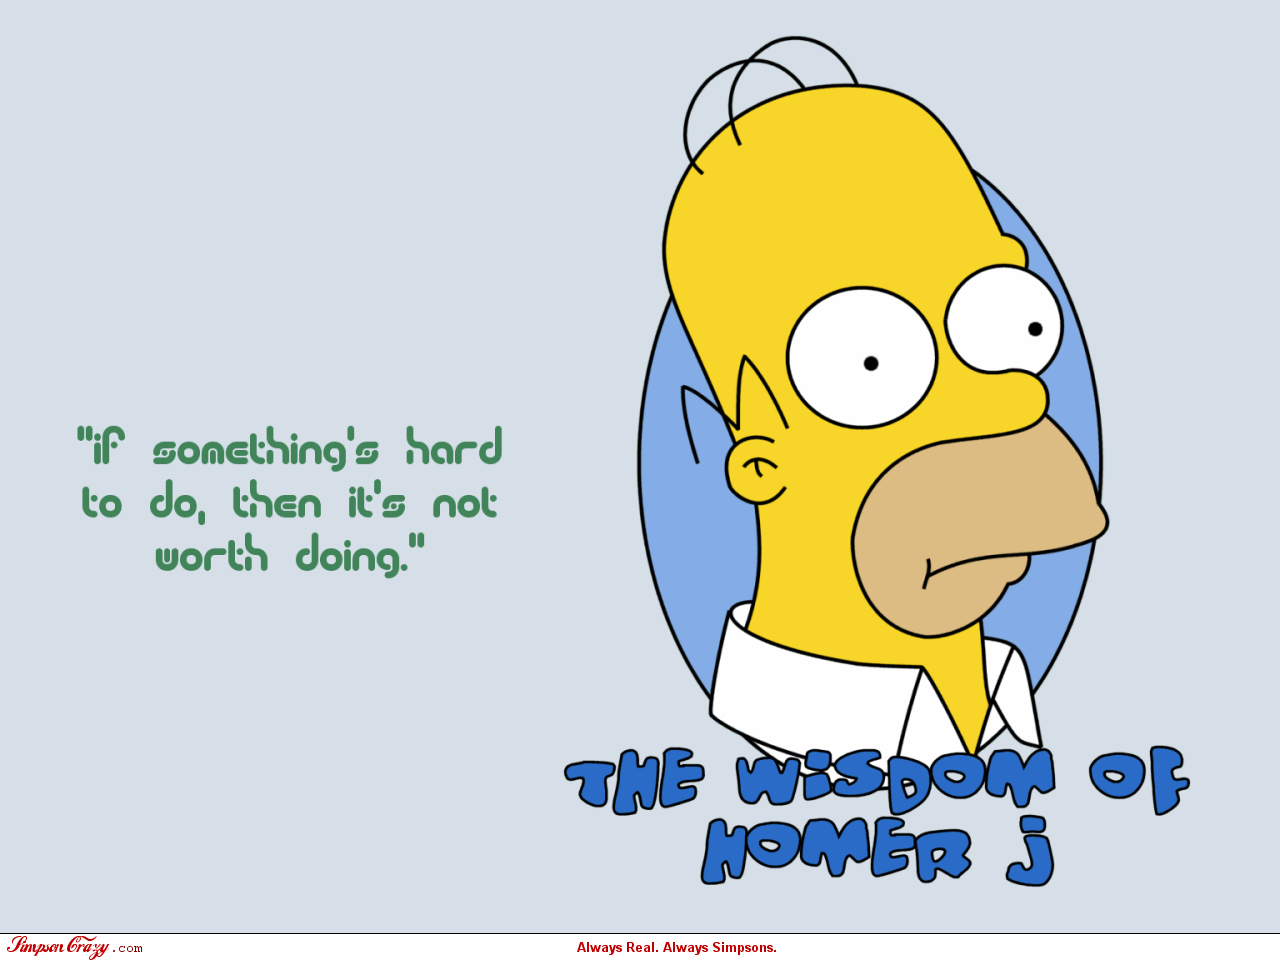 Los Simpsons fondos de pantalla - Simpsons Crazy